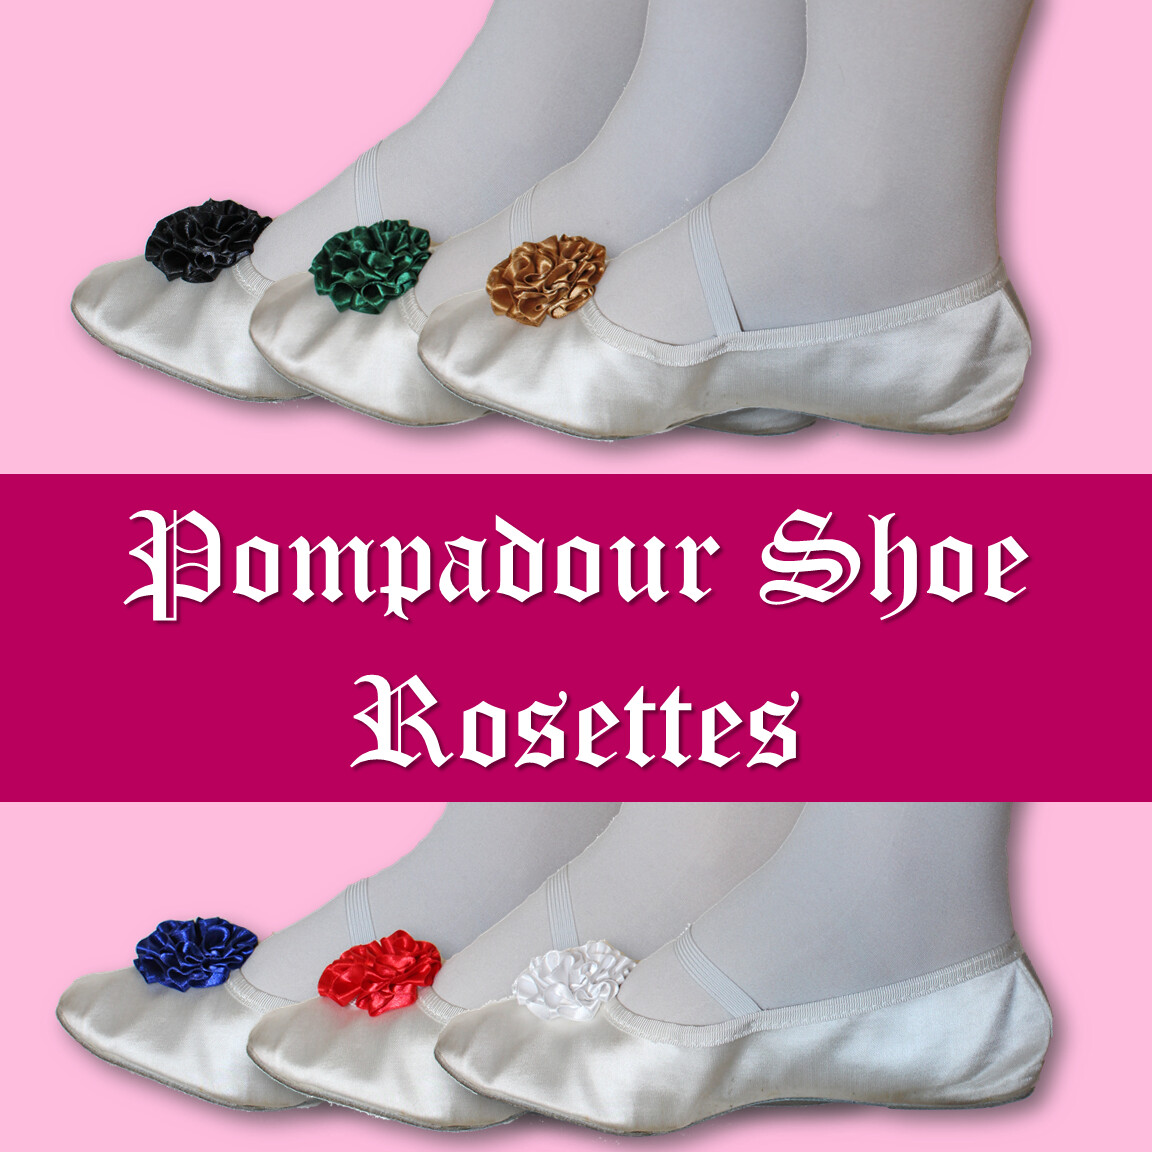 Pompadour Shoe Rosettes